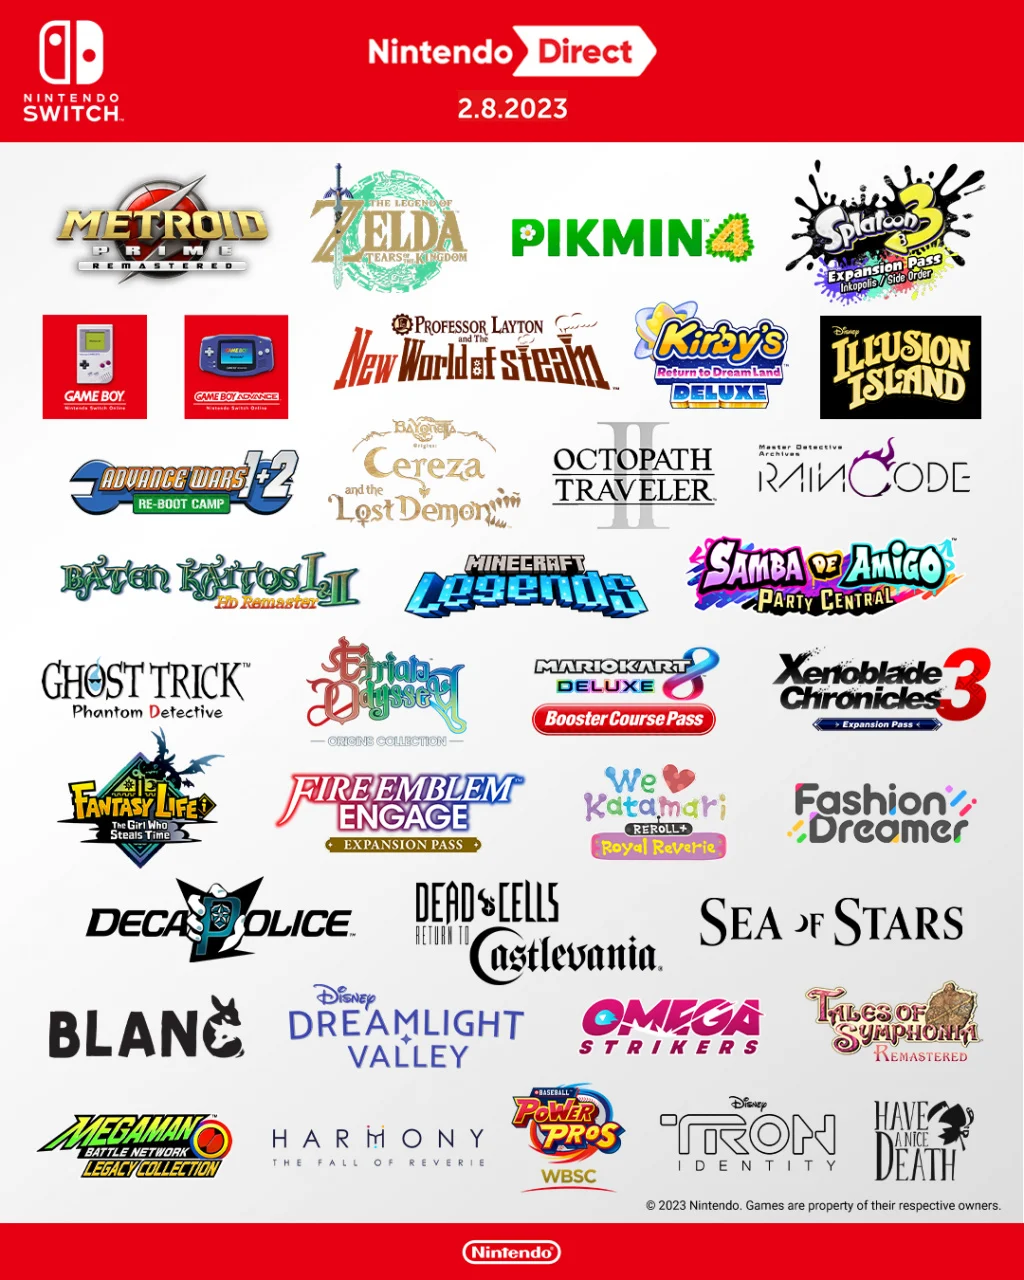 New Nintendo Games 2023 – Shuntaro Furukawa Confirms More To
Release